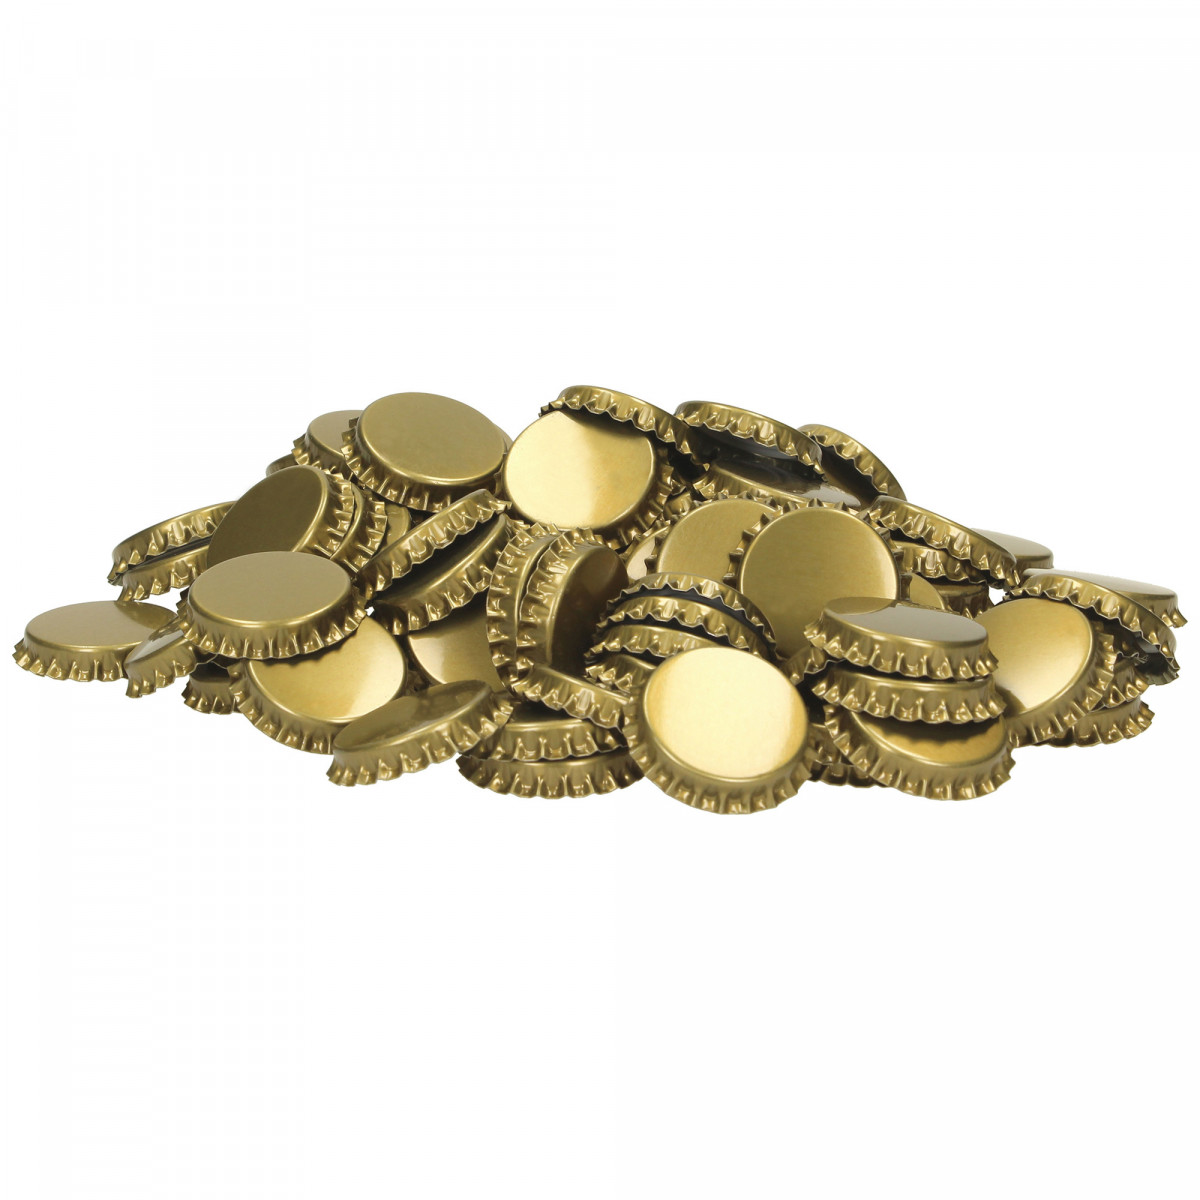 Kronenkorken 29 mm gold - profilierte Einlage - 1.000 St.